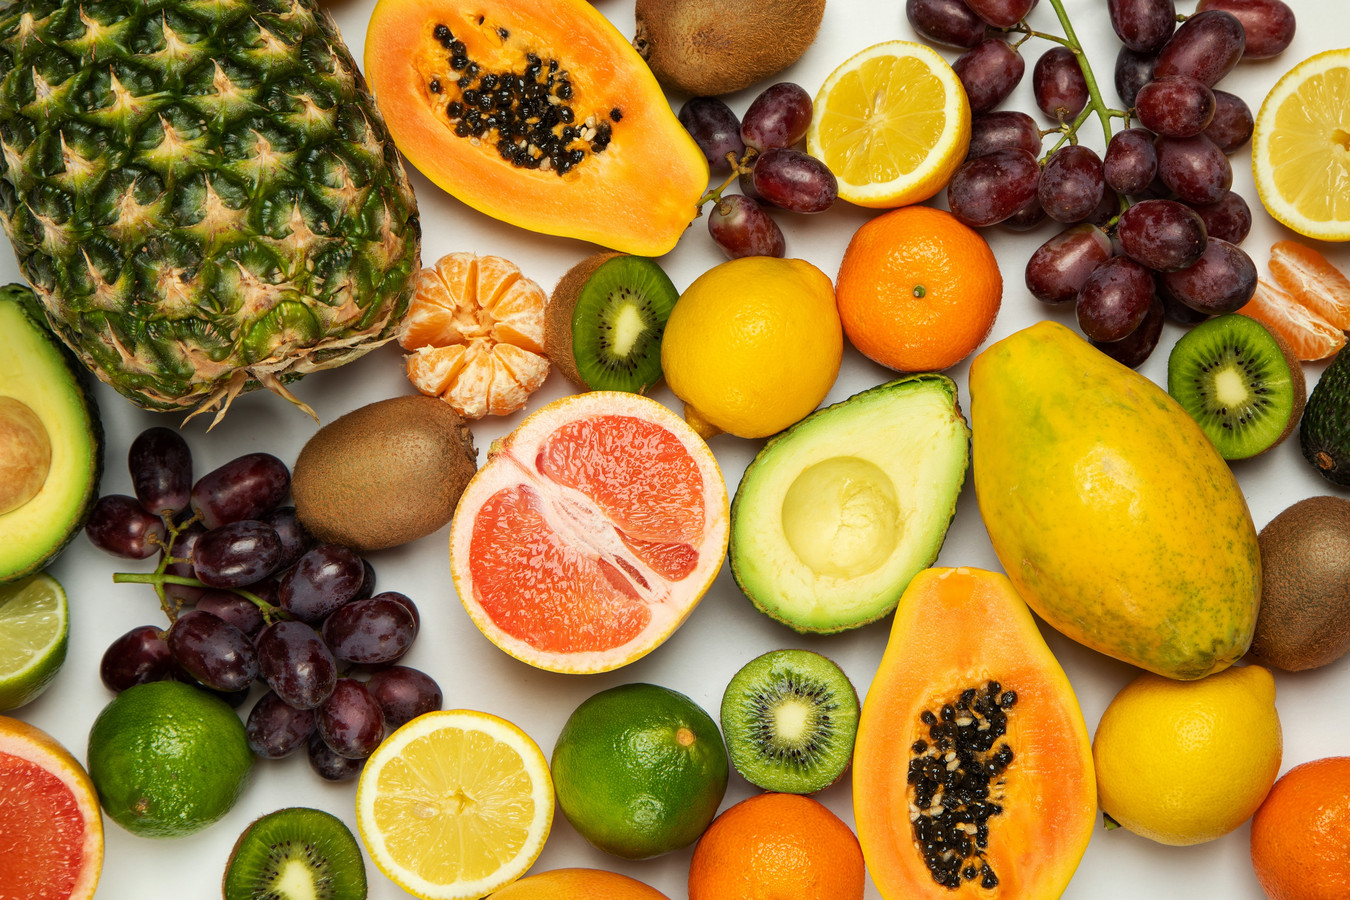 Voici Le Meilleur Fruit Pour La Santé Selon Une étude Foto 7sur7be